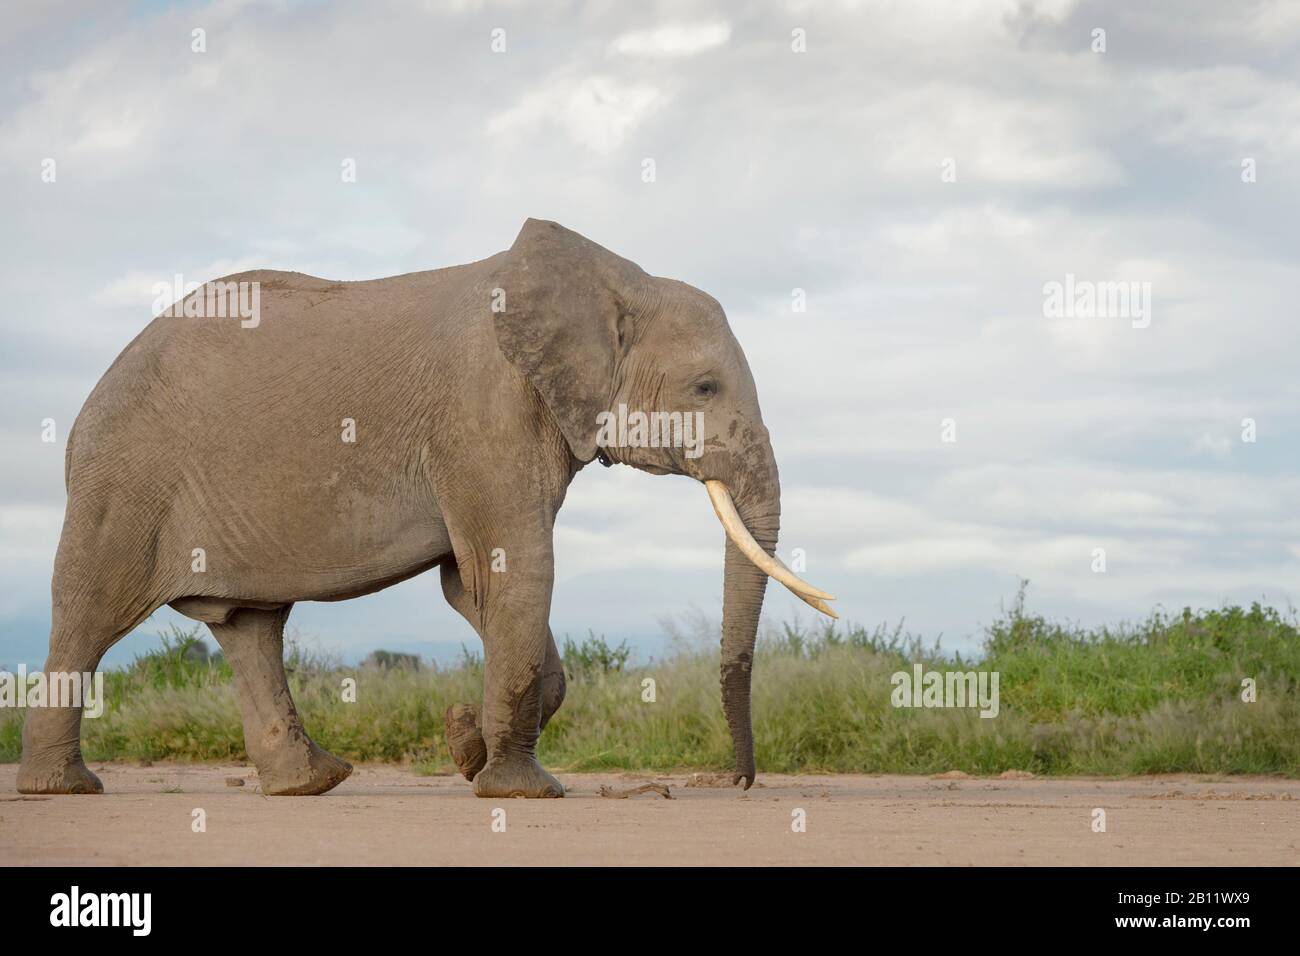 African elephant (Loxodonta africana) walking on savanna, Amboseli national park, Kenya. Stock Photo